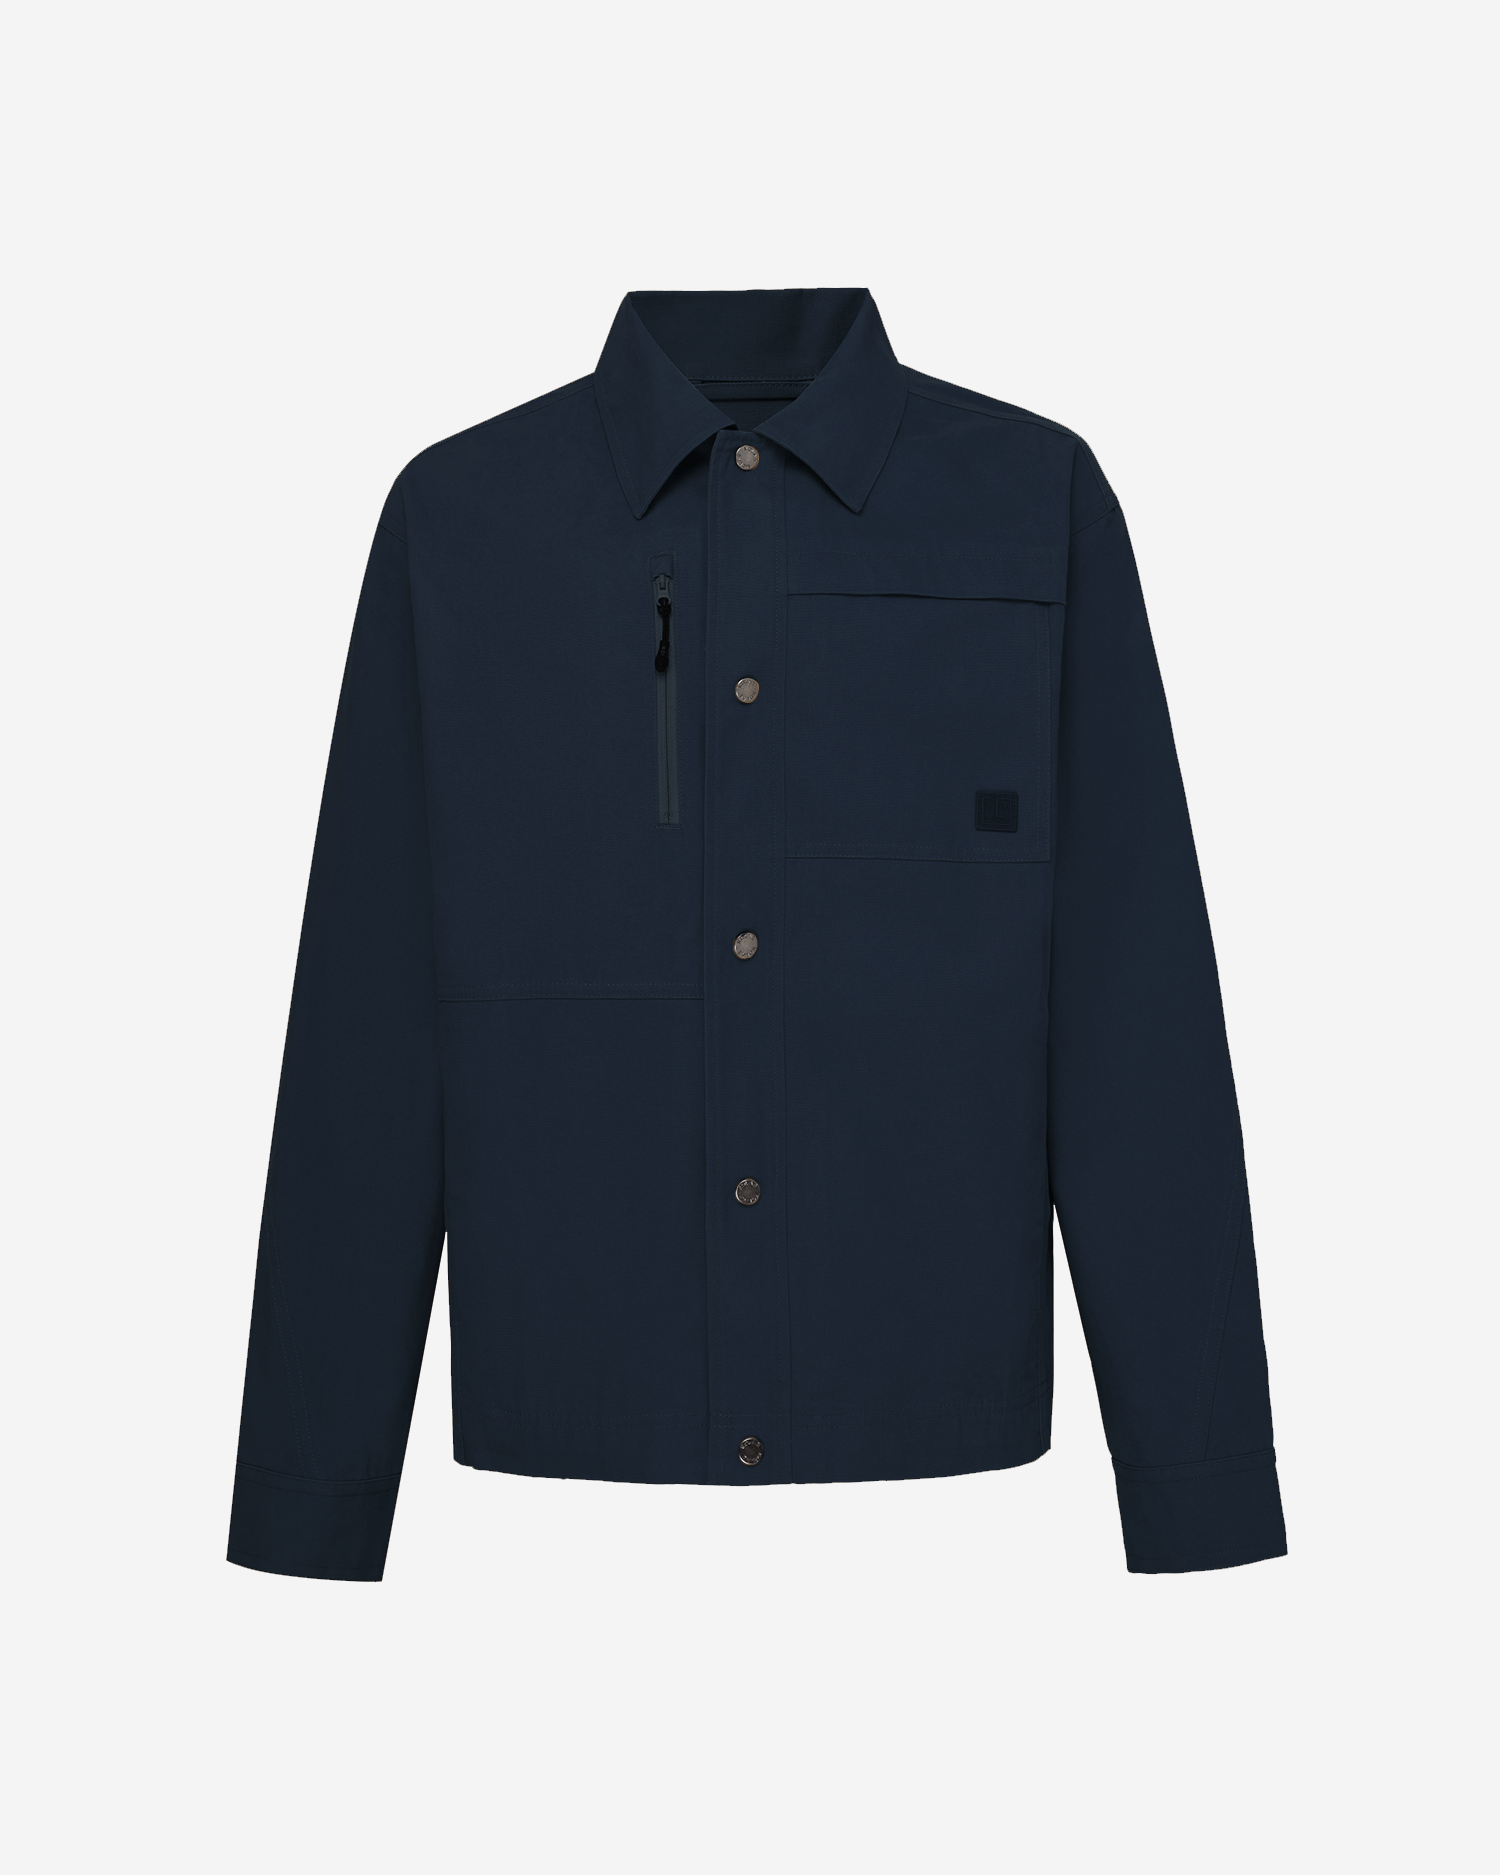 Men's Chore Jacket in Dark Blue 01 #dark-blue